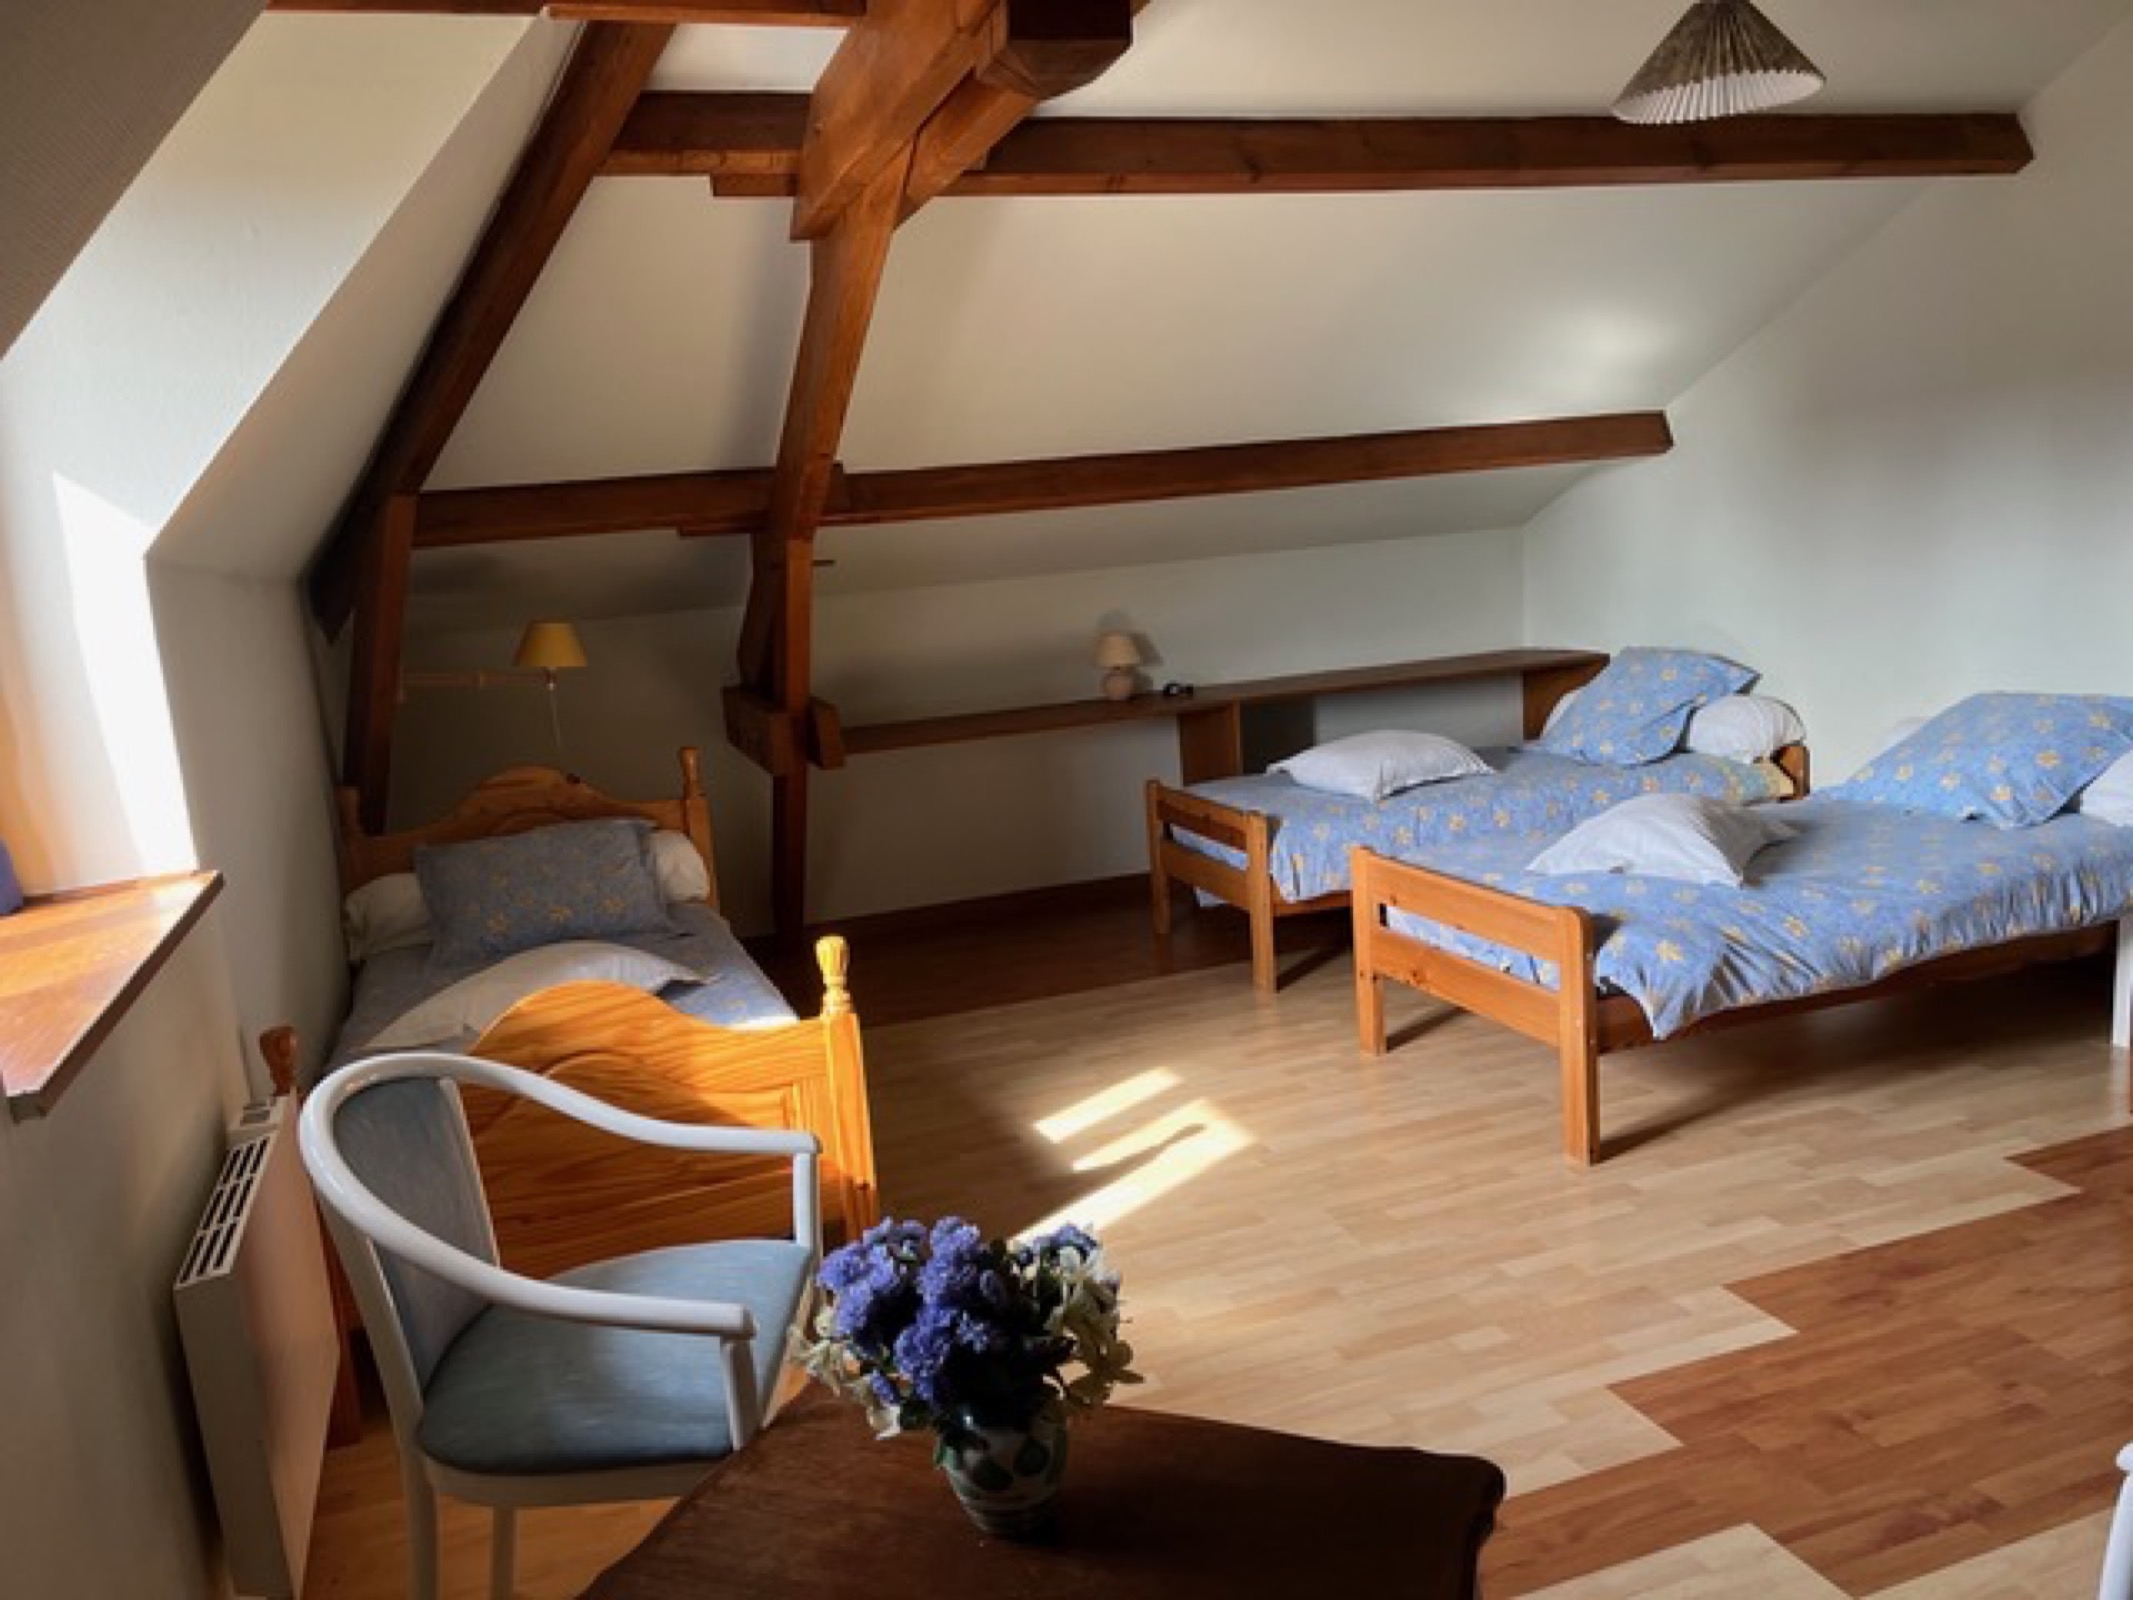 Une chambre avec trois lits individuel, orienté sud, tres lumineuse, un bon espace de jeux pour les enfants.